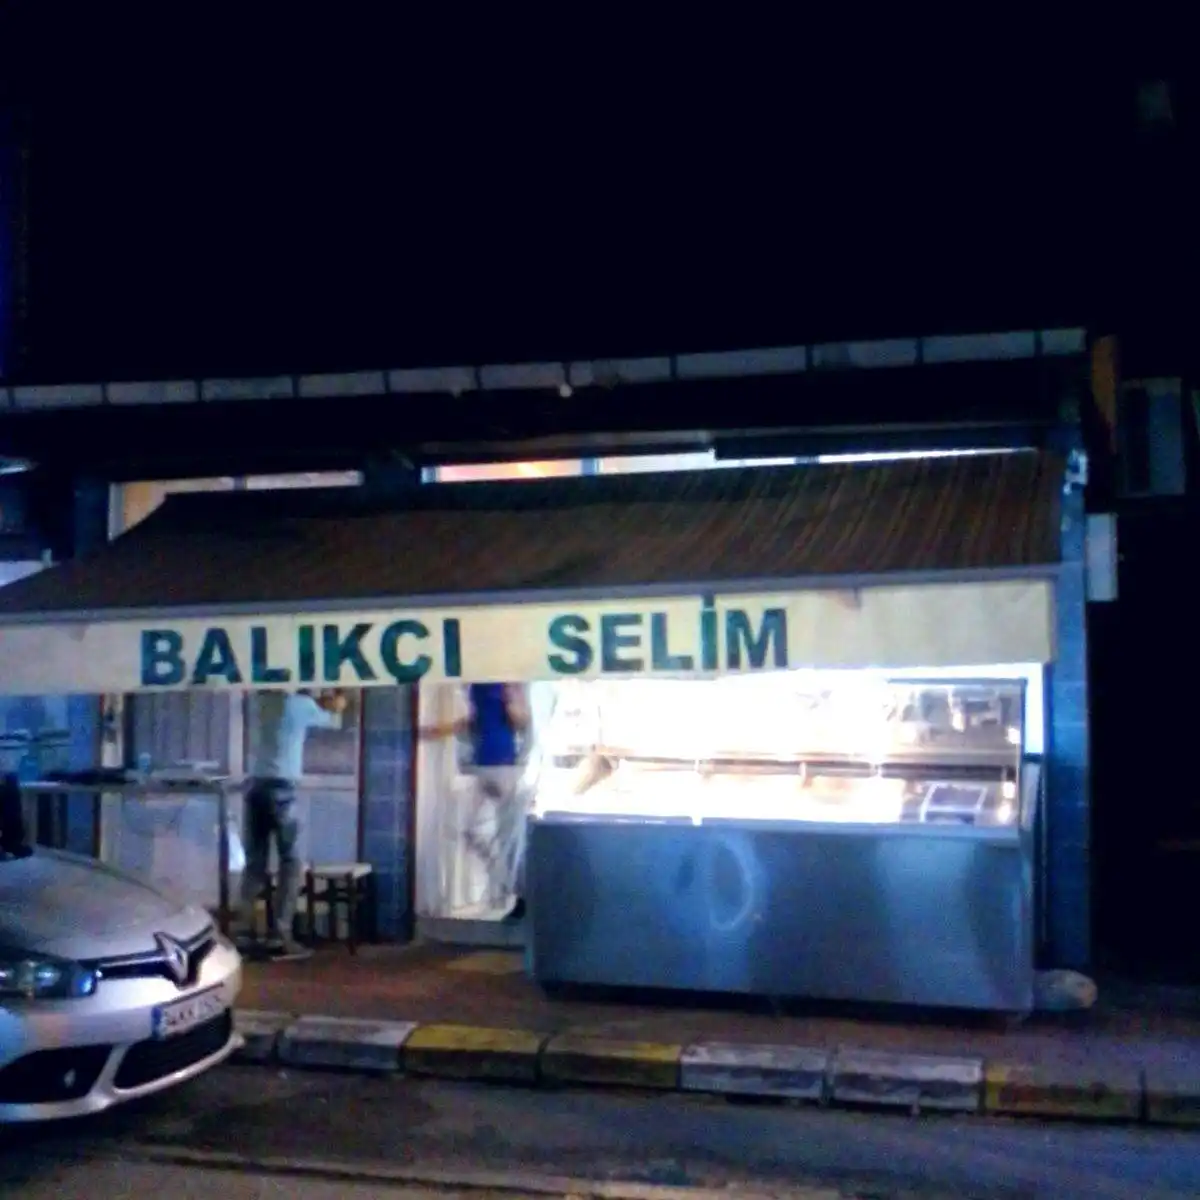 Balıkçı Selim